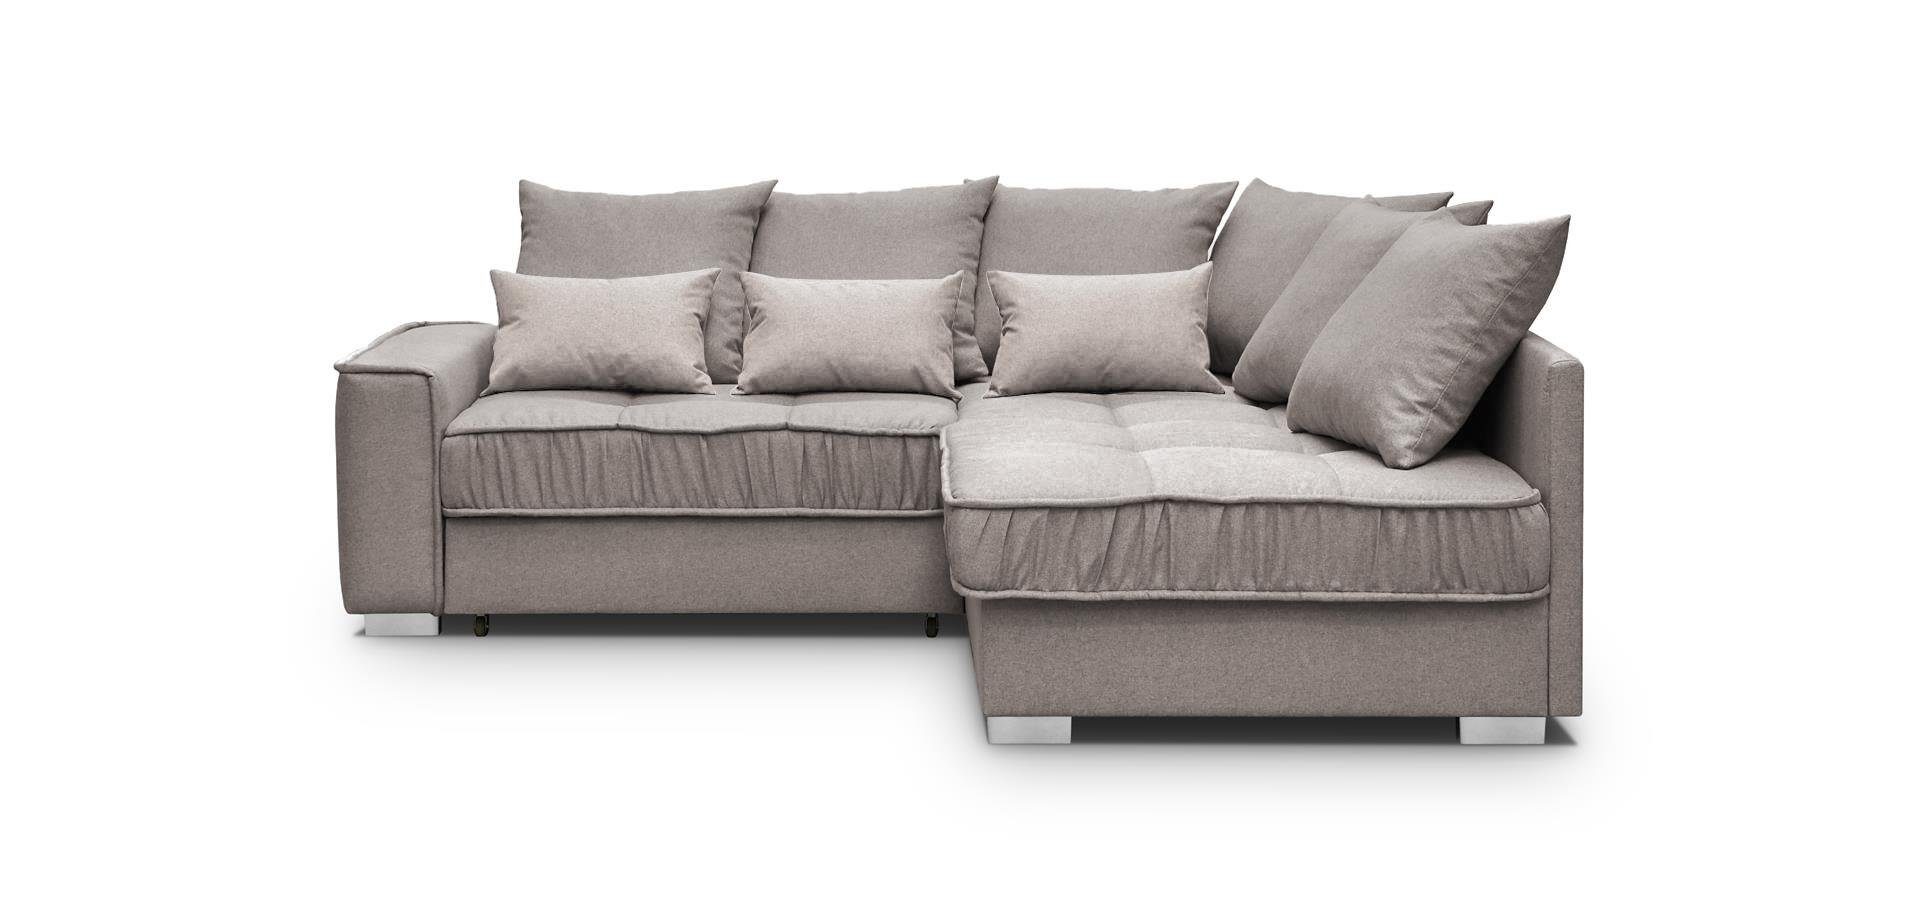 Beautysofa Polsterecke Modern Eckcouch 11 mit Schlaffunktion + Couch Cappucino Sofa rino Ralf und Bettkasten (rino 03)